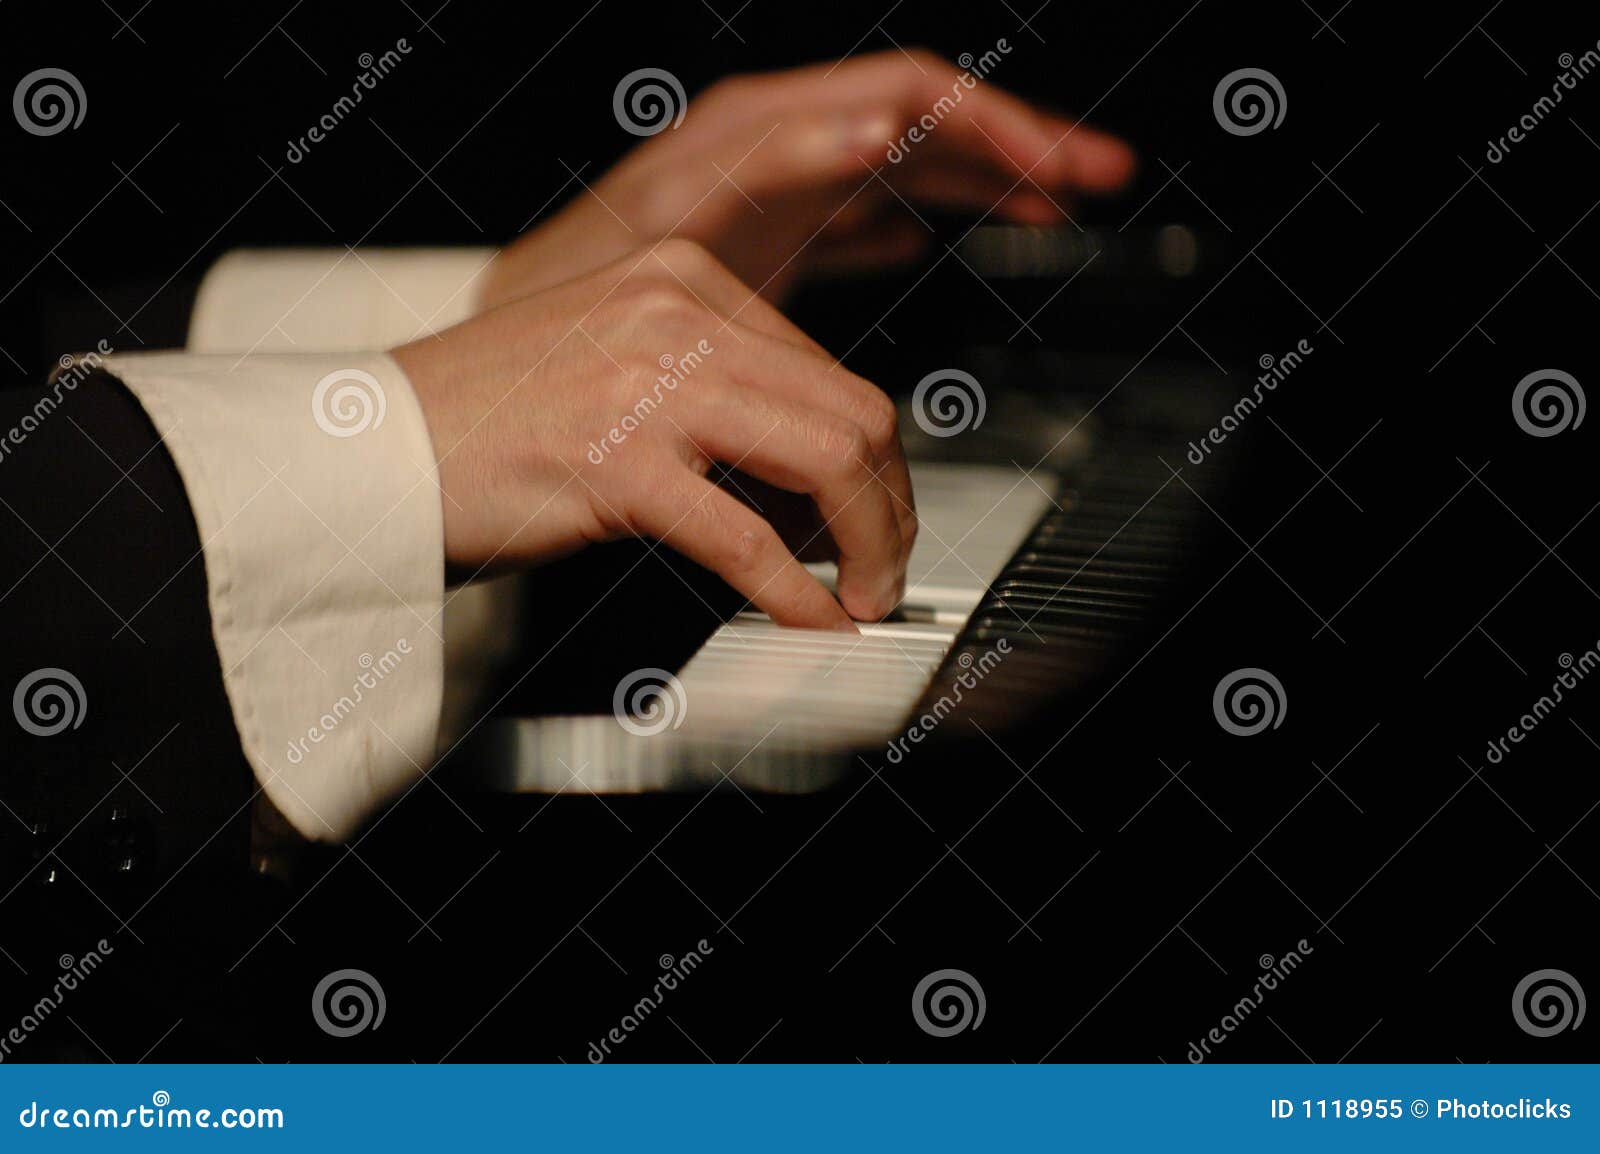 concert pianist